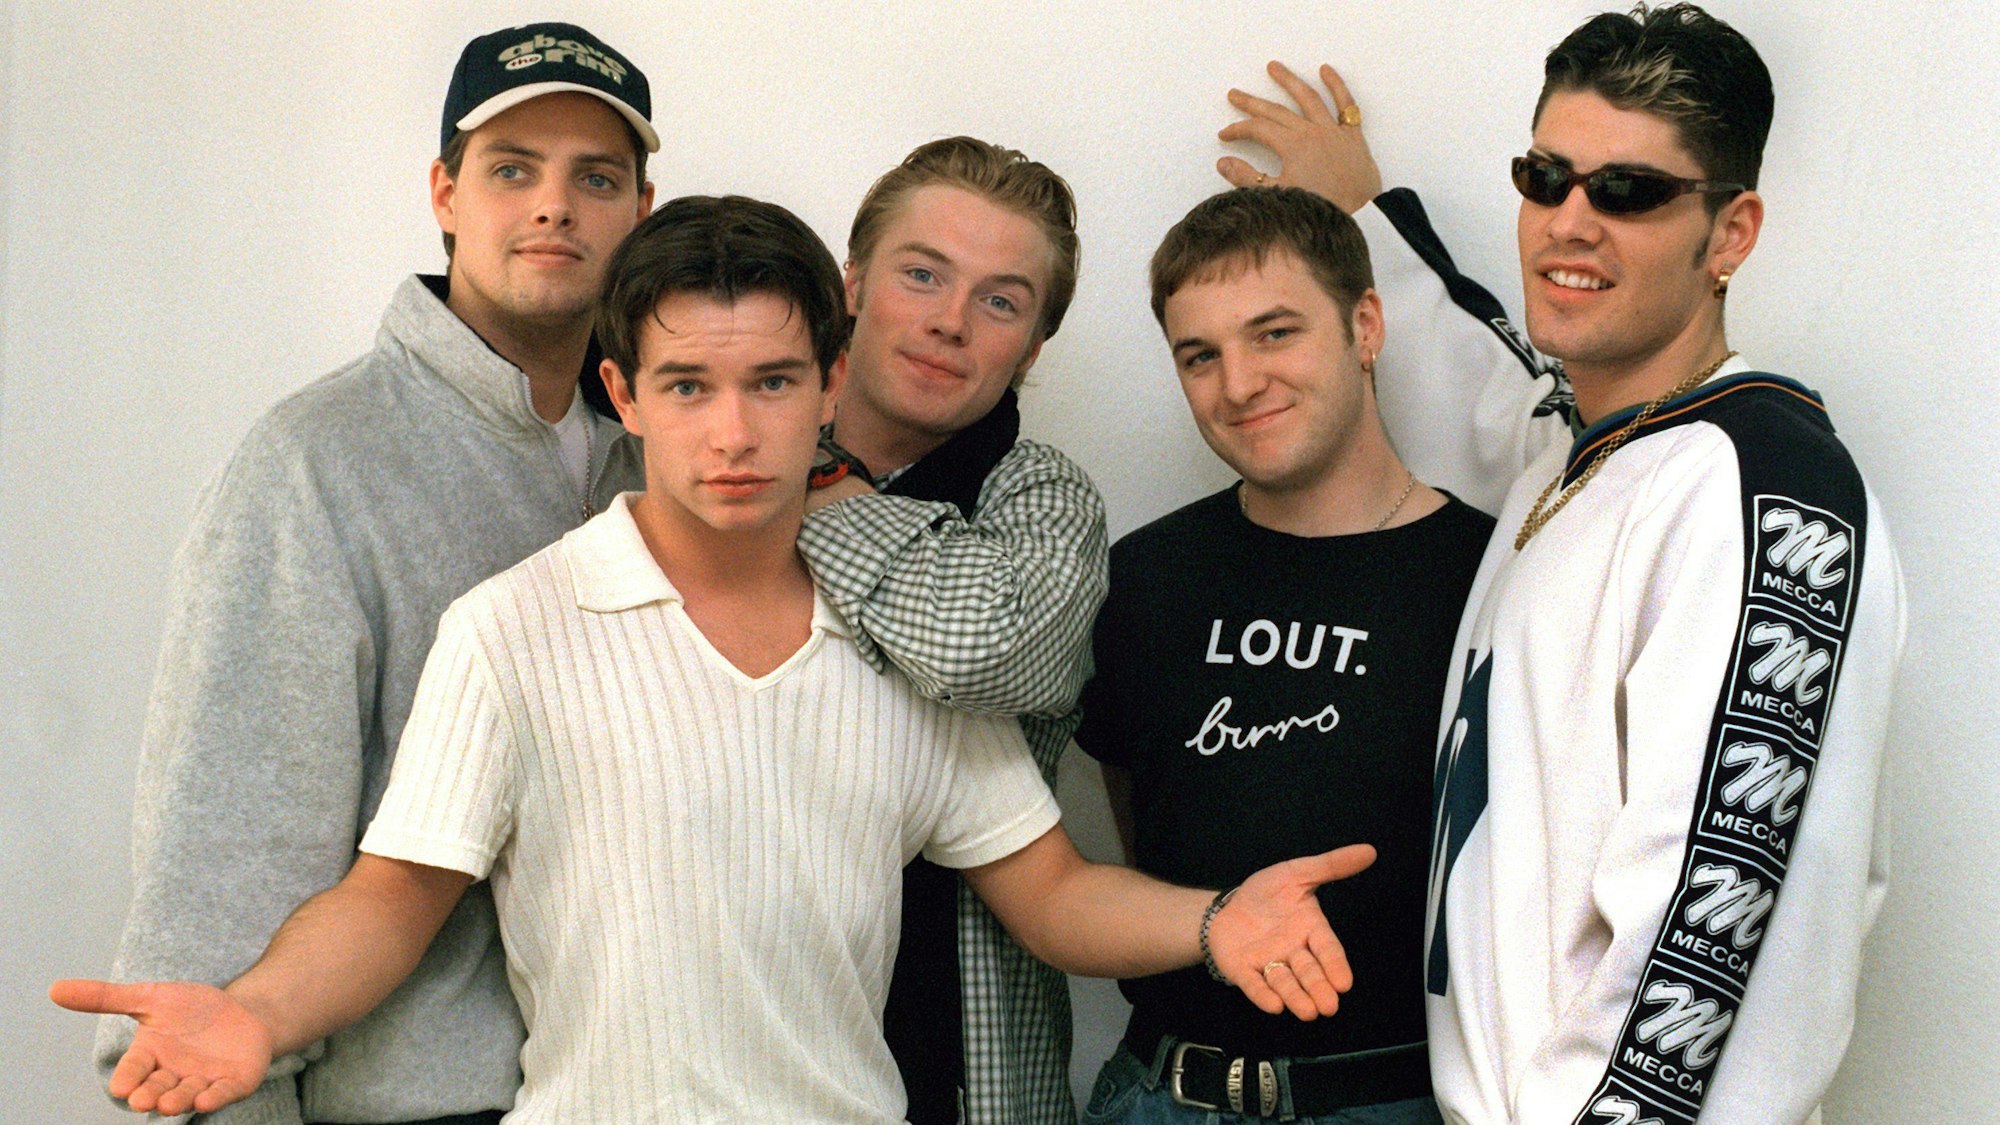 Keith Duffy, Stephen Gately, Ronan Keating, Shane Lynch und Mikey Graham von der Band „Boyzone“ posieren für ein Foto.